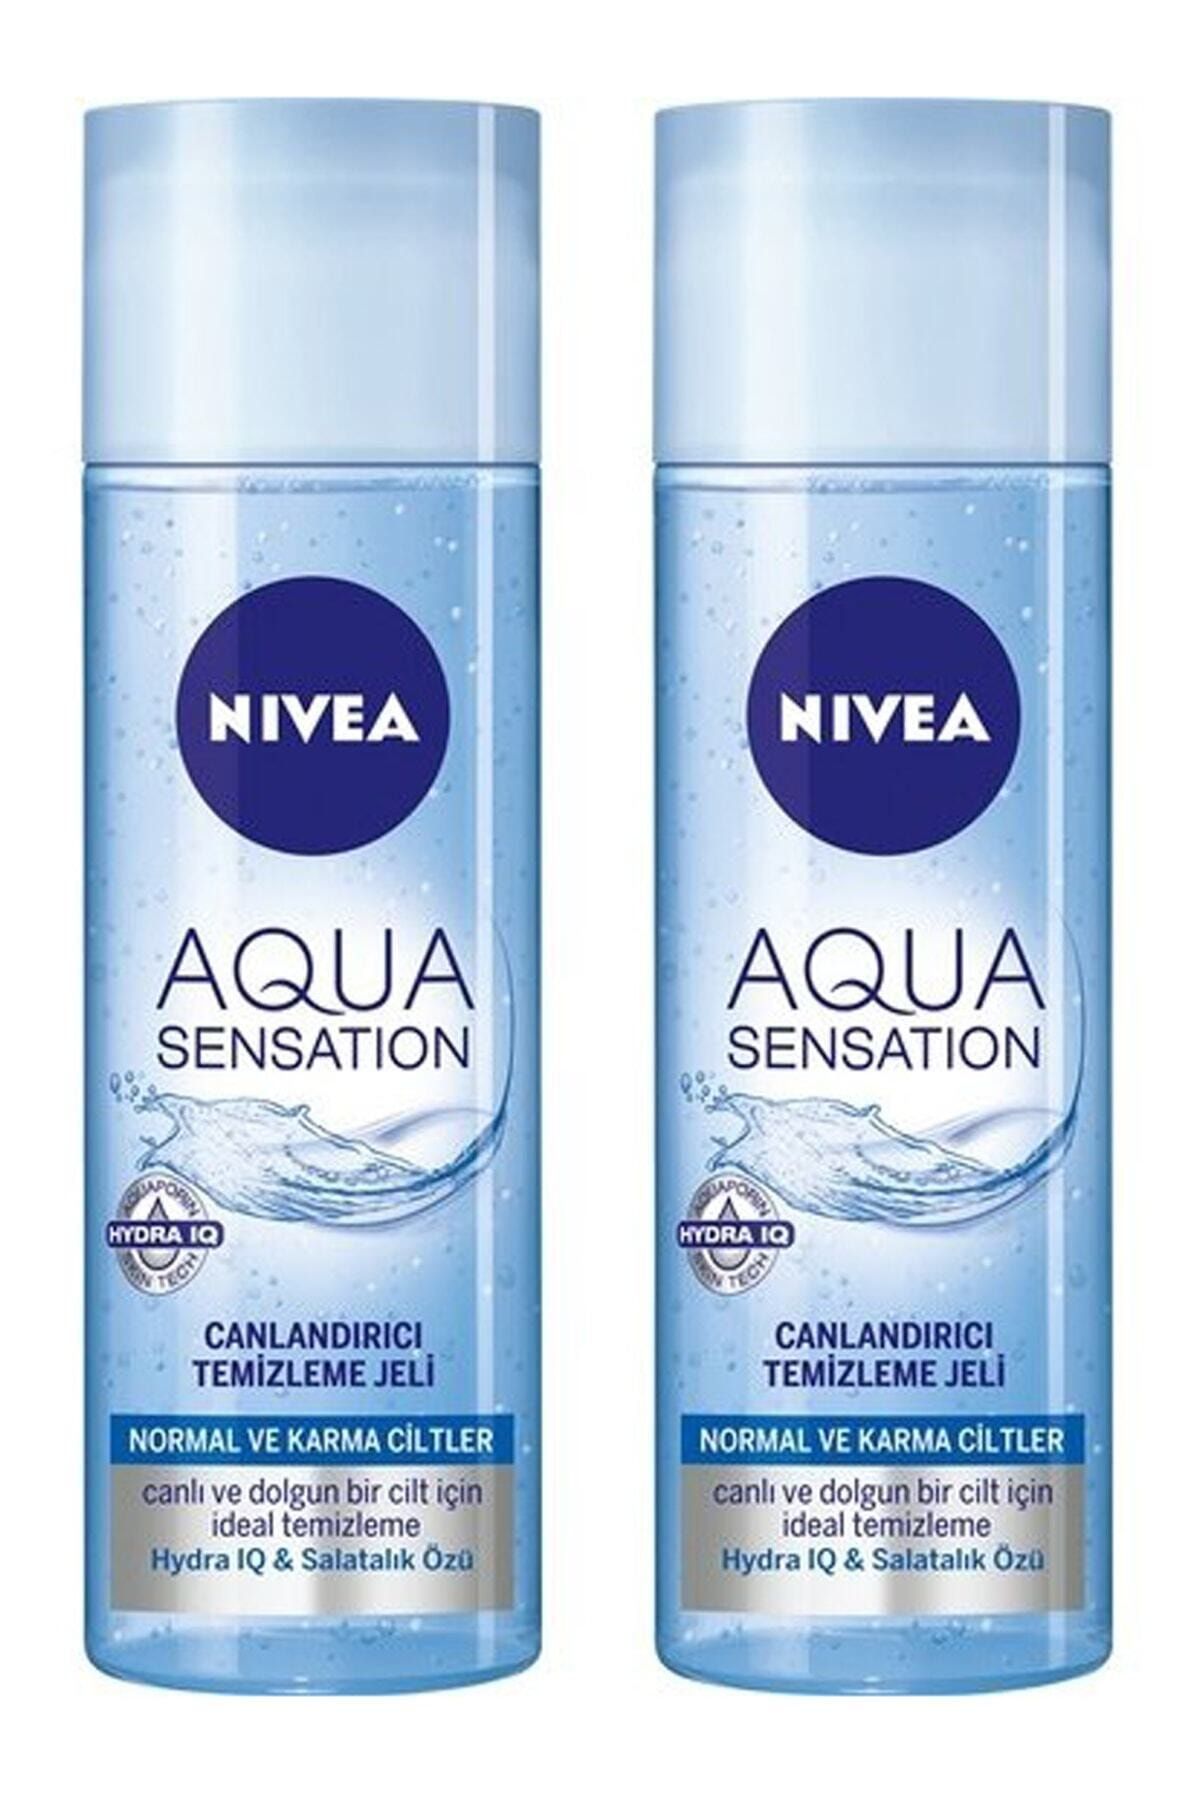 NIVEA Aqua Sensation Normal/karma Ciltler Için Canlandırıcı Temizleme Jeli 200 ml X 2 Adet